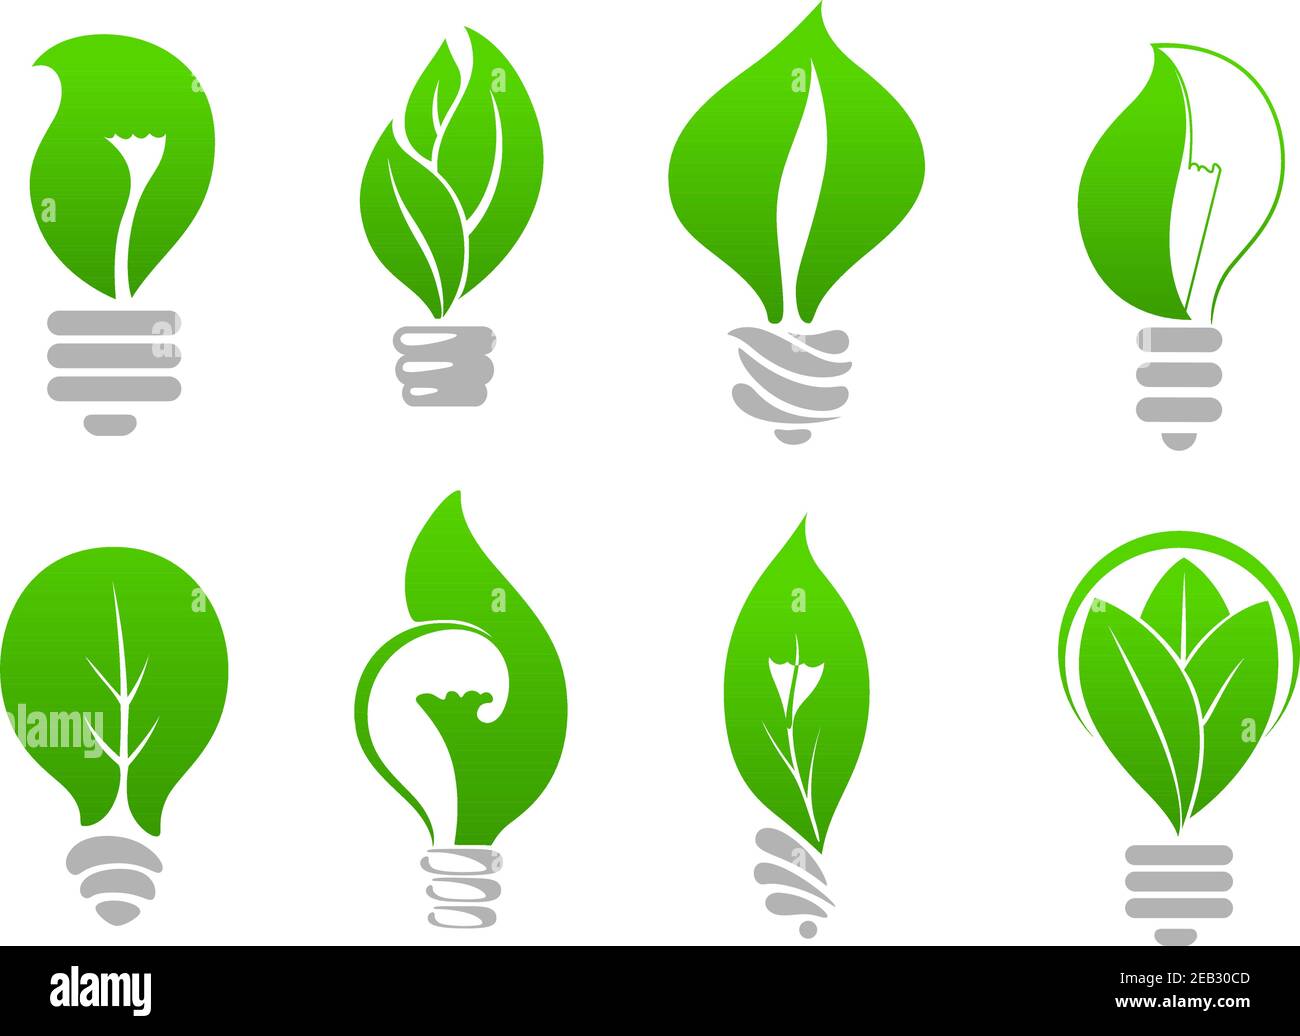 Bombillas ecológicas de bajo consumo iconos de lámparas estilizadas con  hojas frescas en el interior, para la ecología o el diseño de temas de  ahorro de energía Imagen Vector de stock -